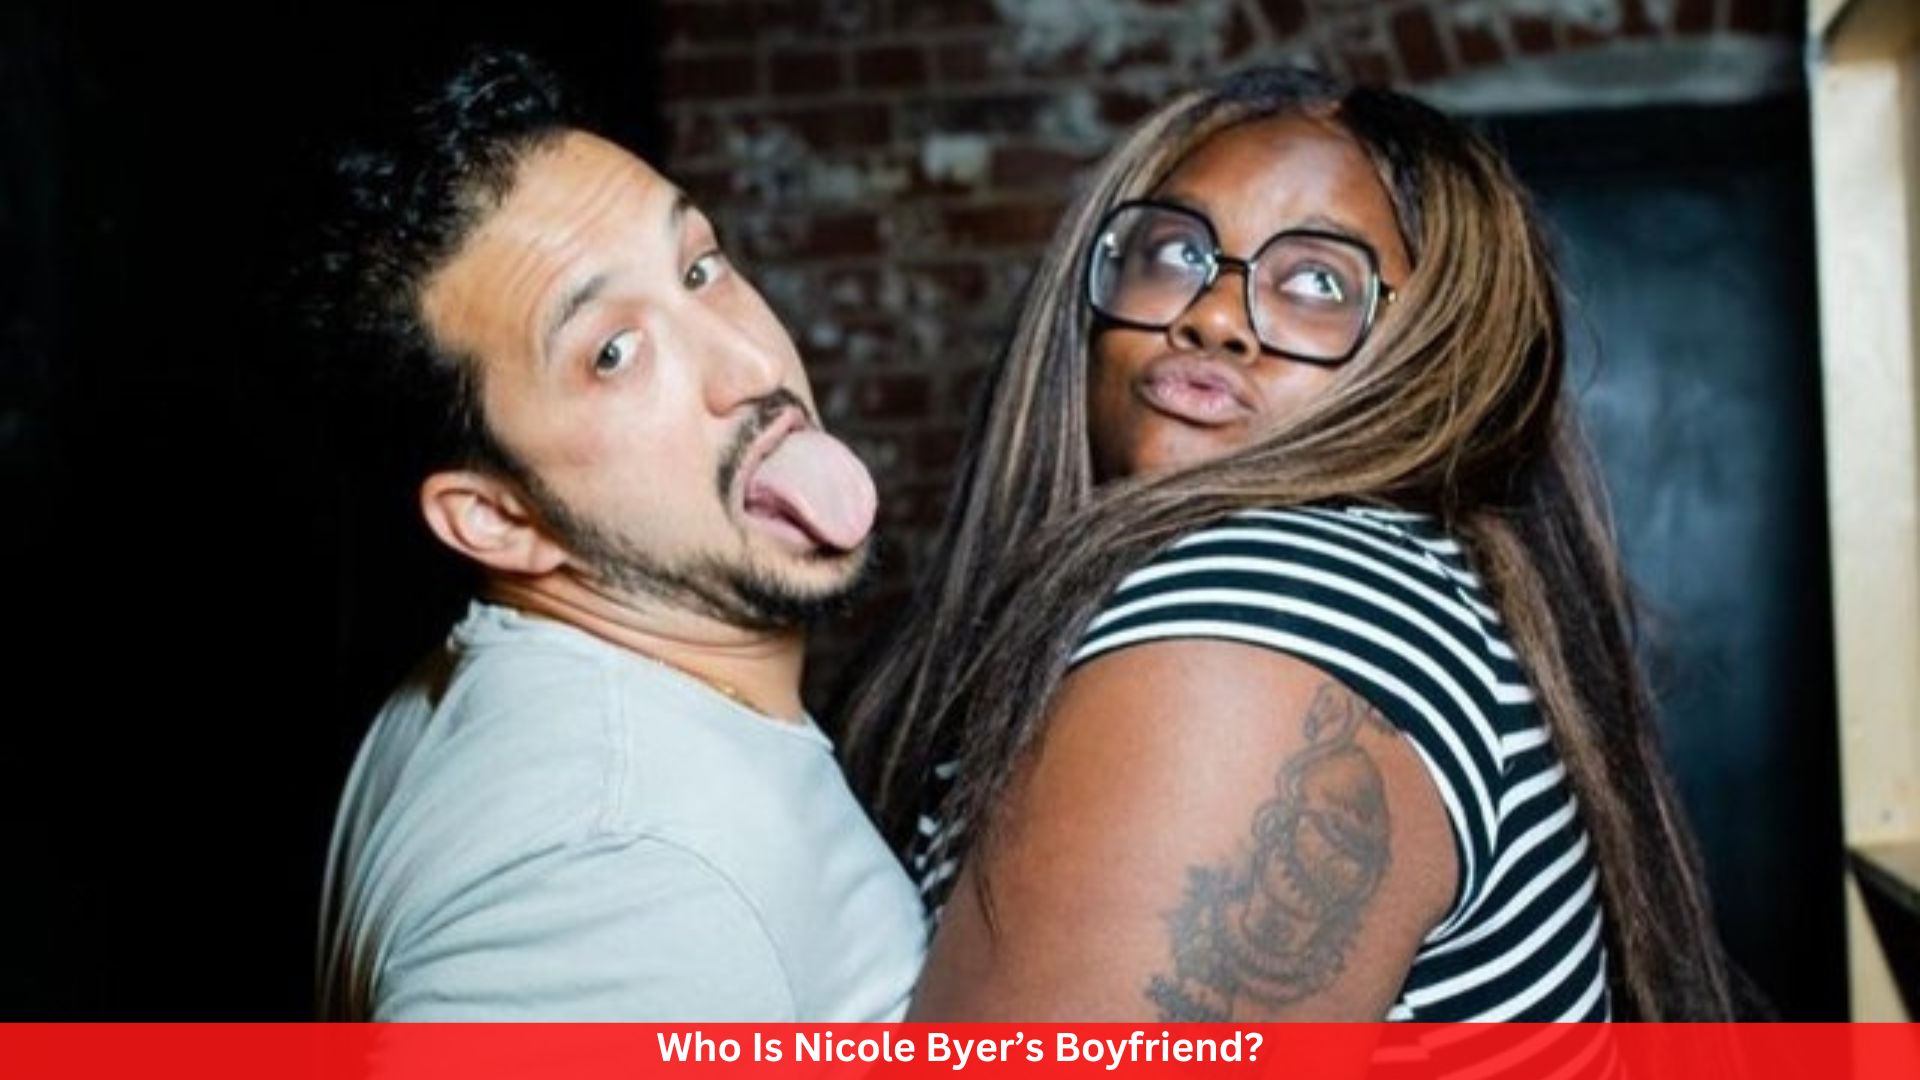 Who Is Nicole Byer’s Boyfriend?